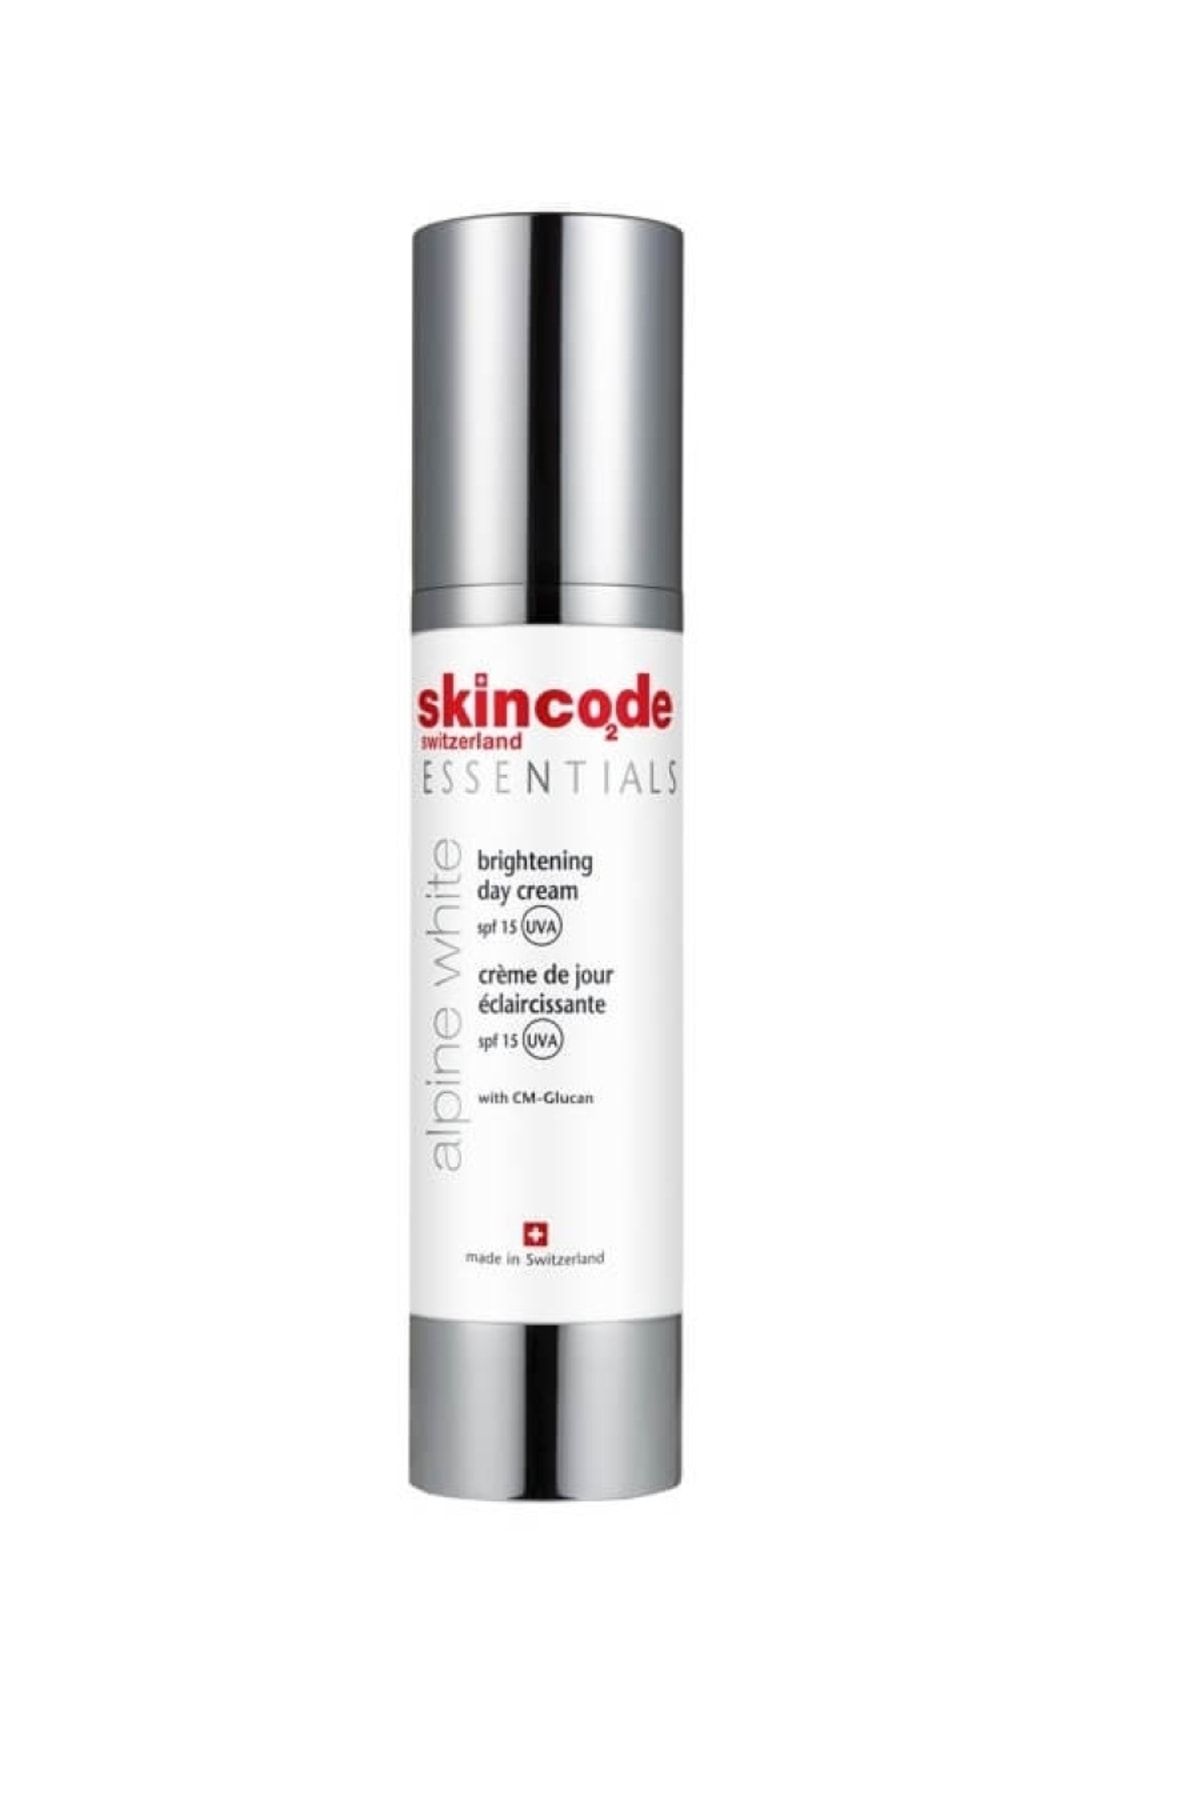 Skincode Güneş Koruyucu Gündüz Bakım Kremi Brightening Day Cream Spf 15 50 ml